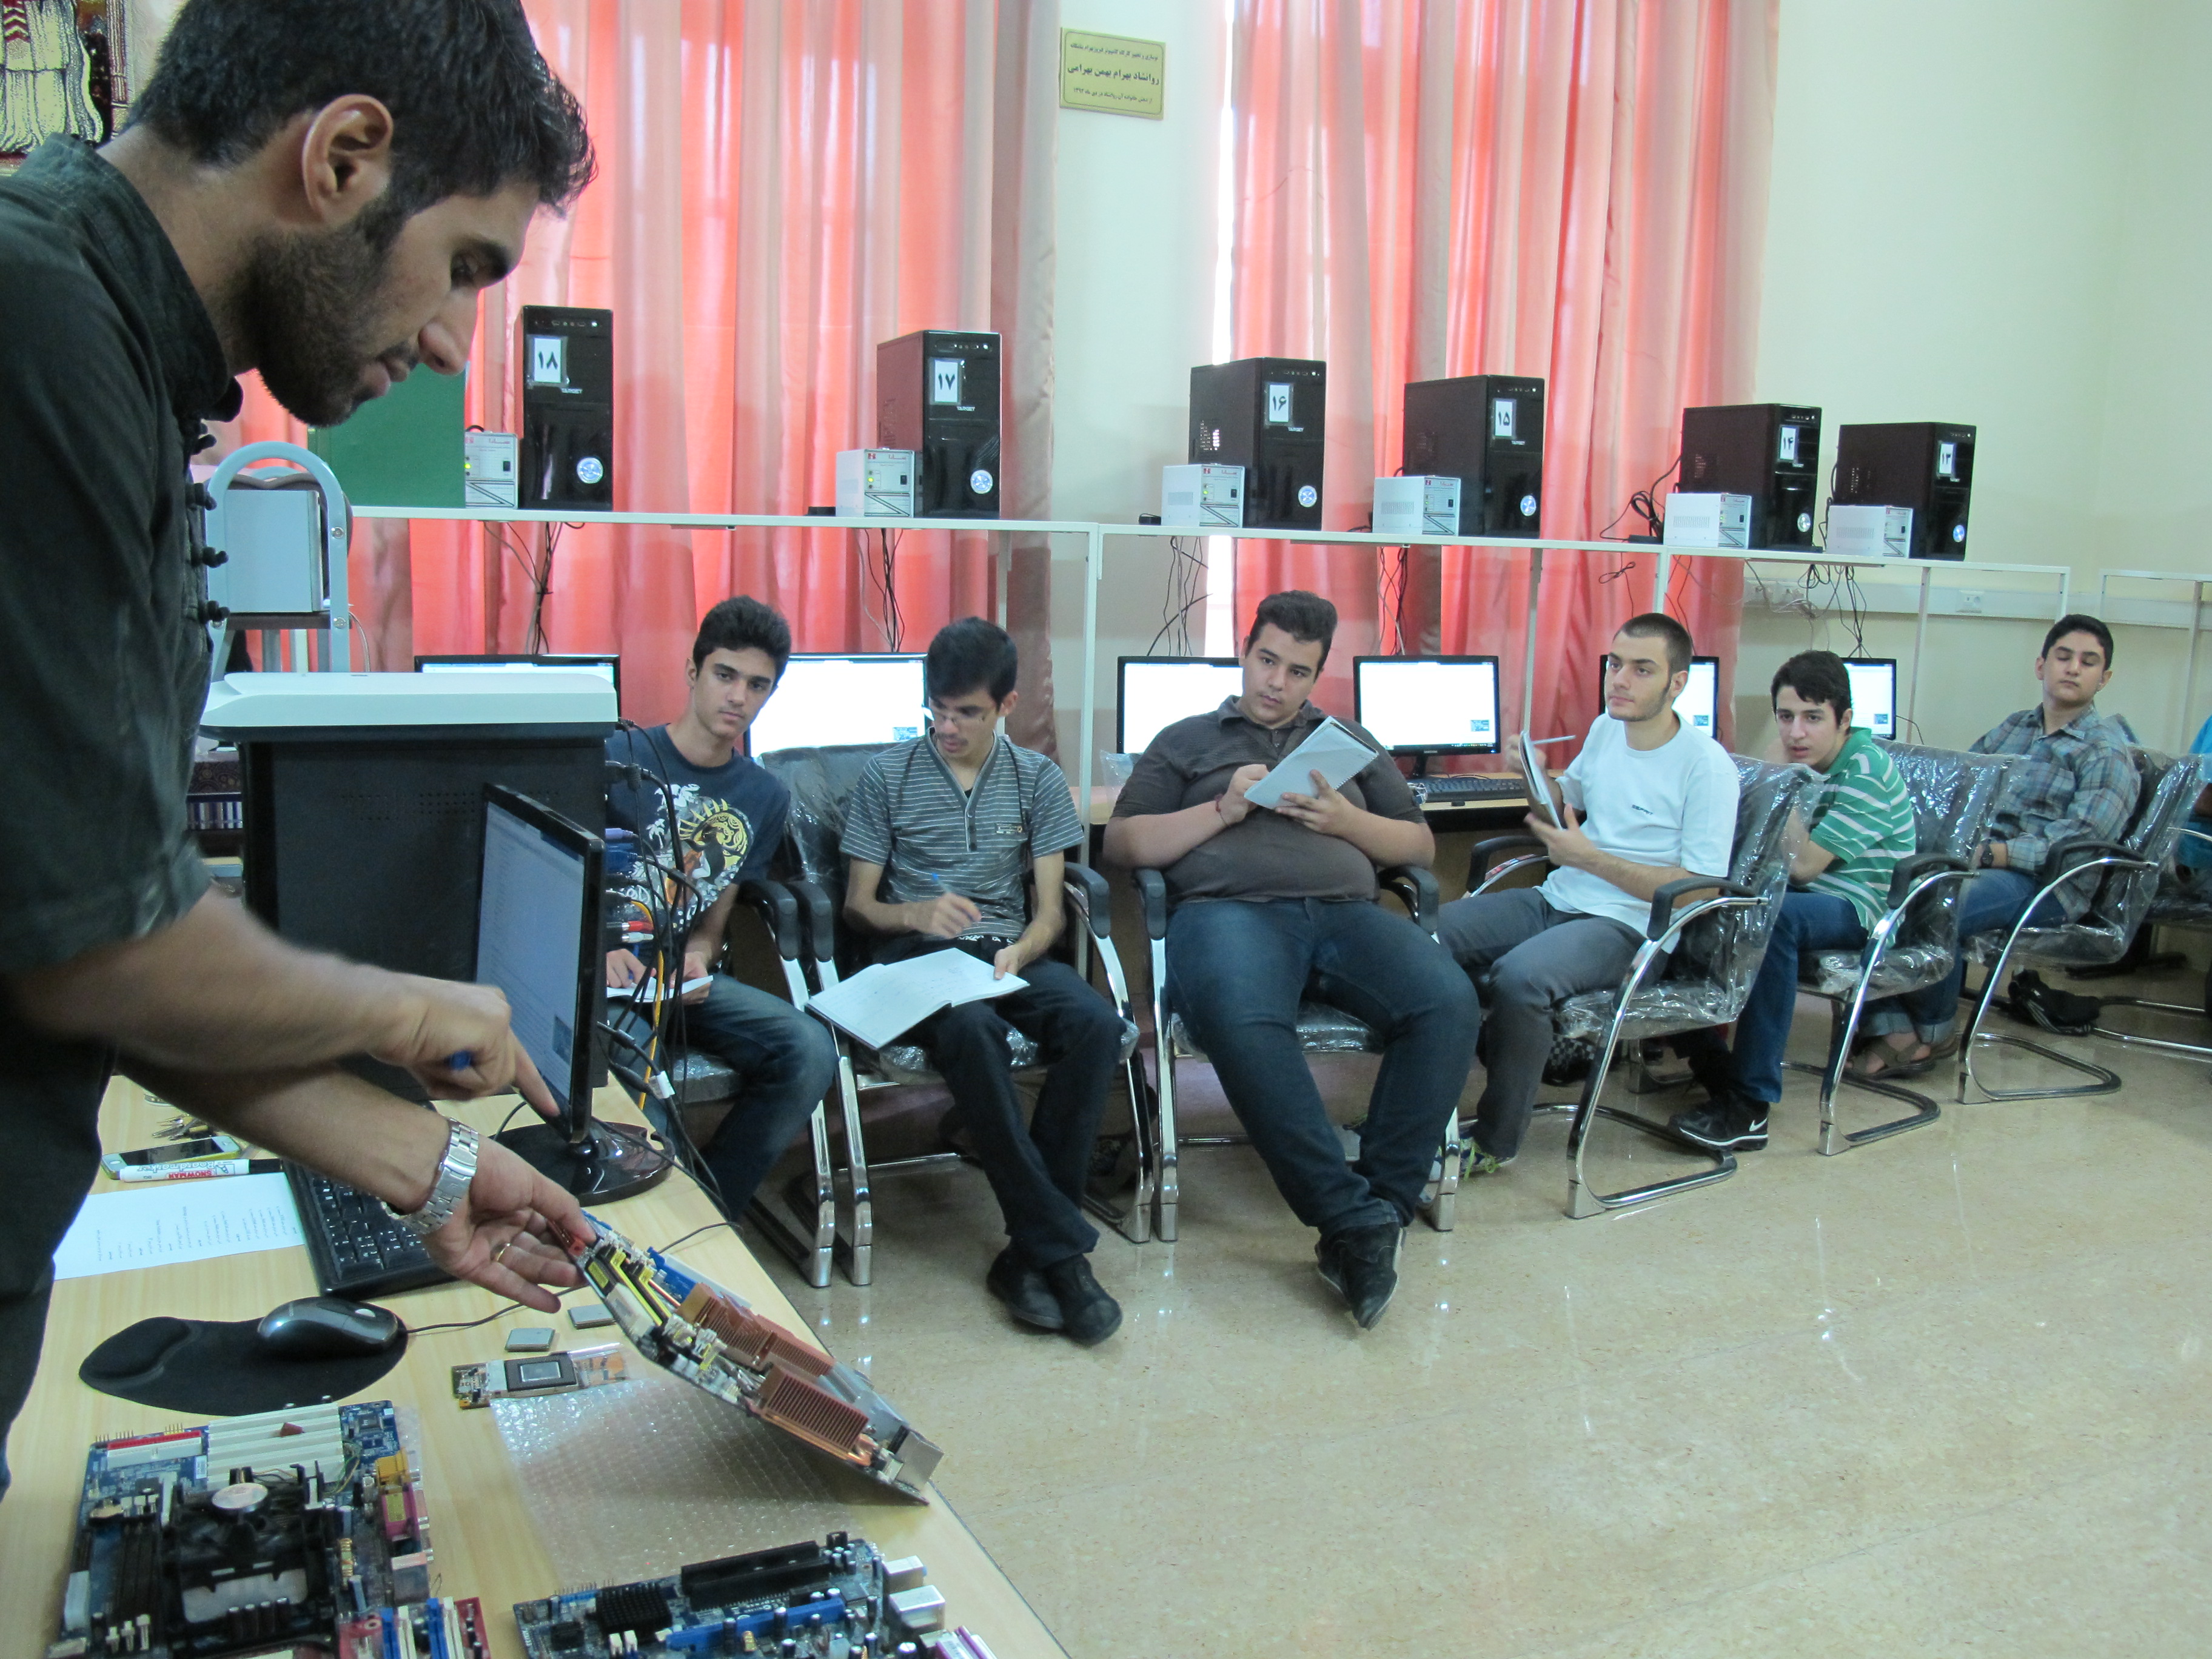 برگزاری کلاس آموزشی ویندوز 7 در دبیرستان ماندگار فیروزبهرام